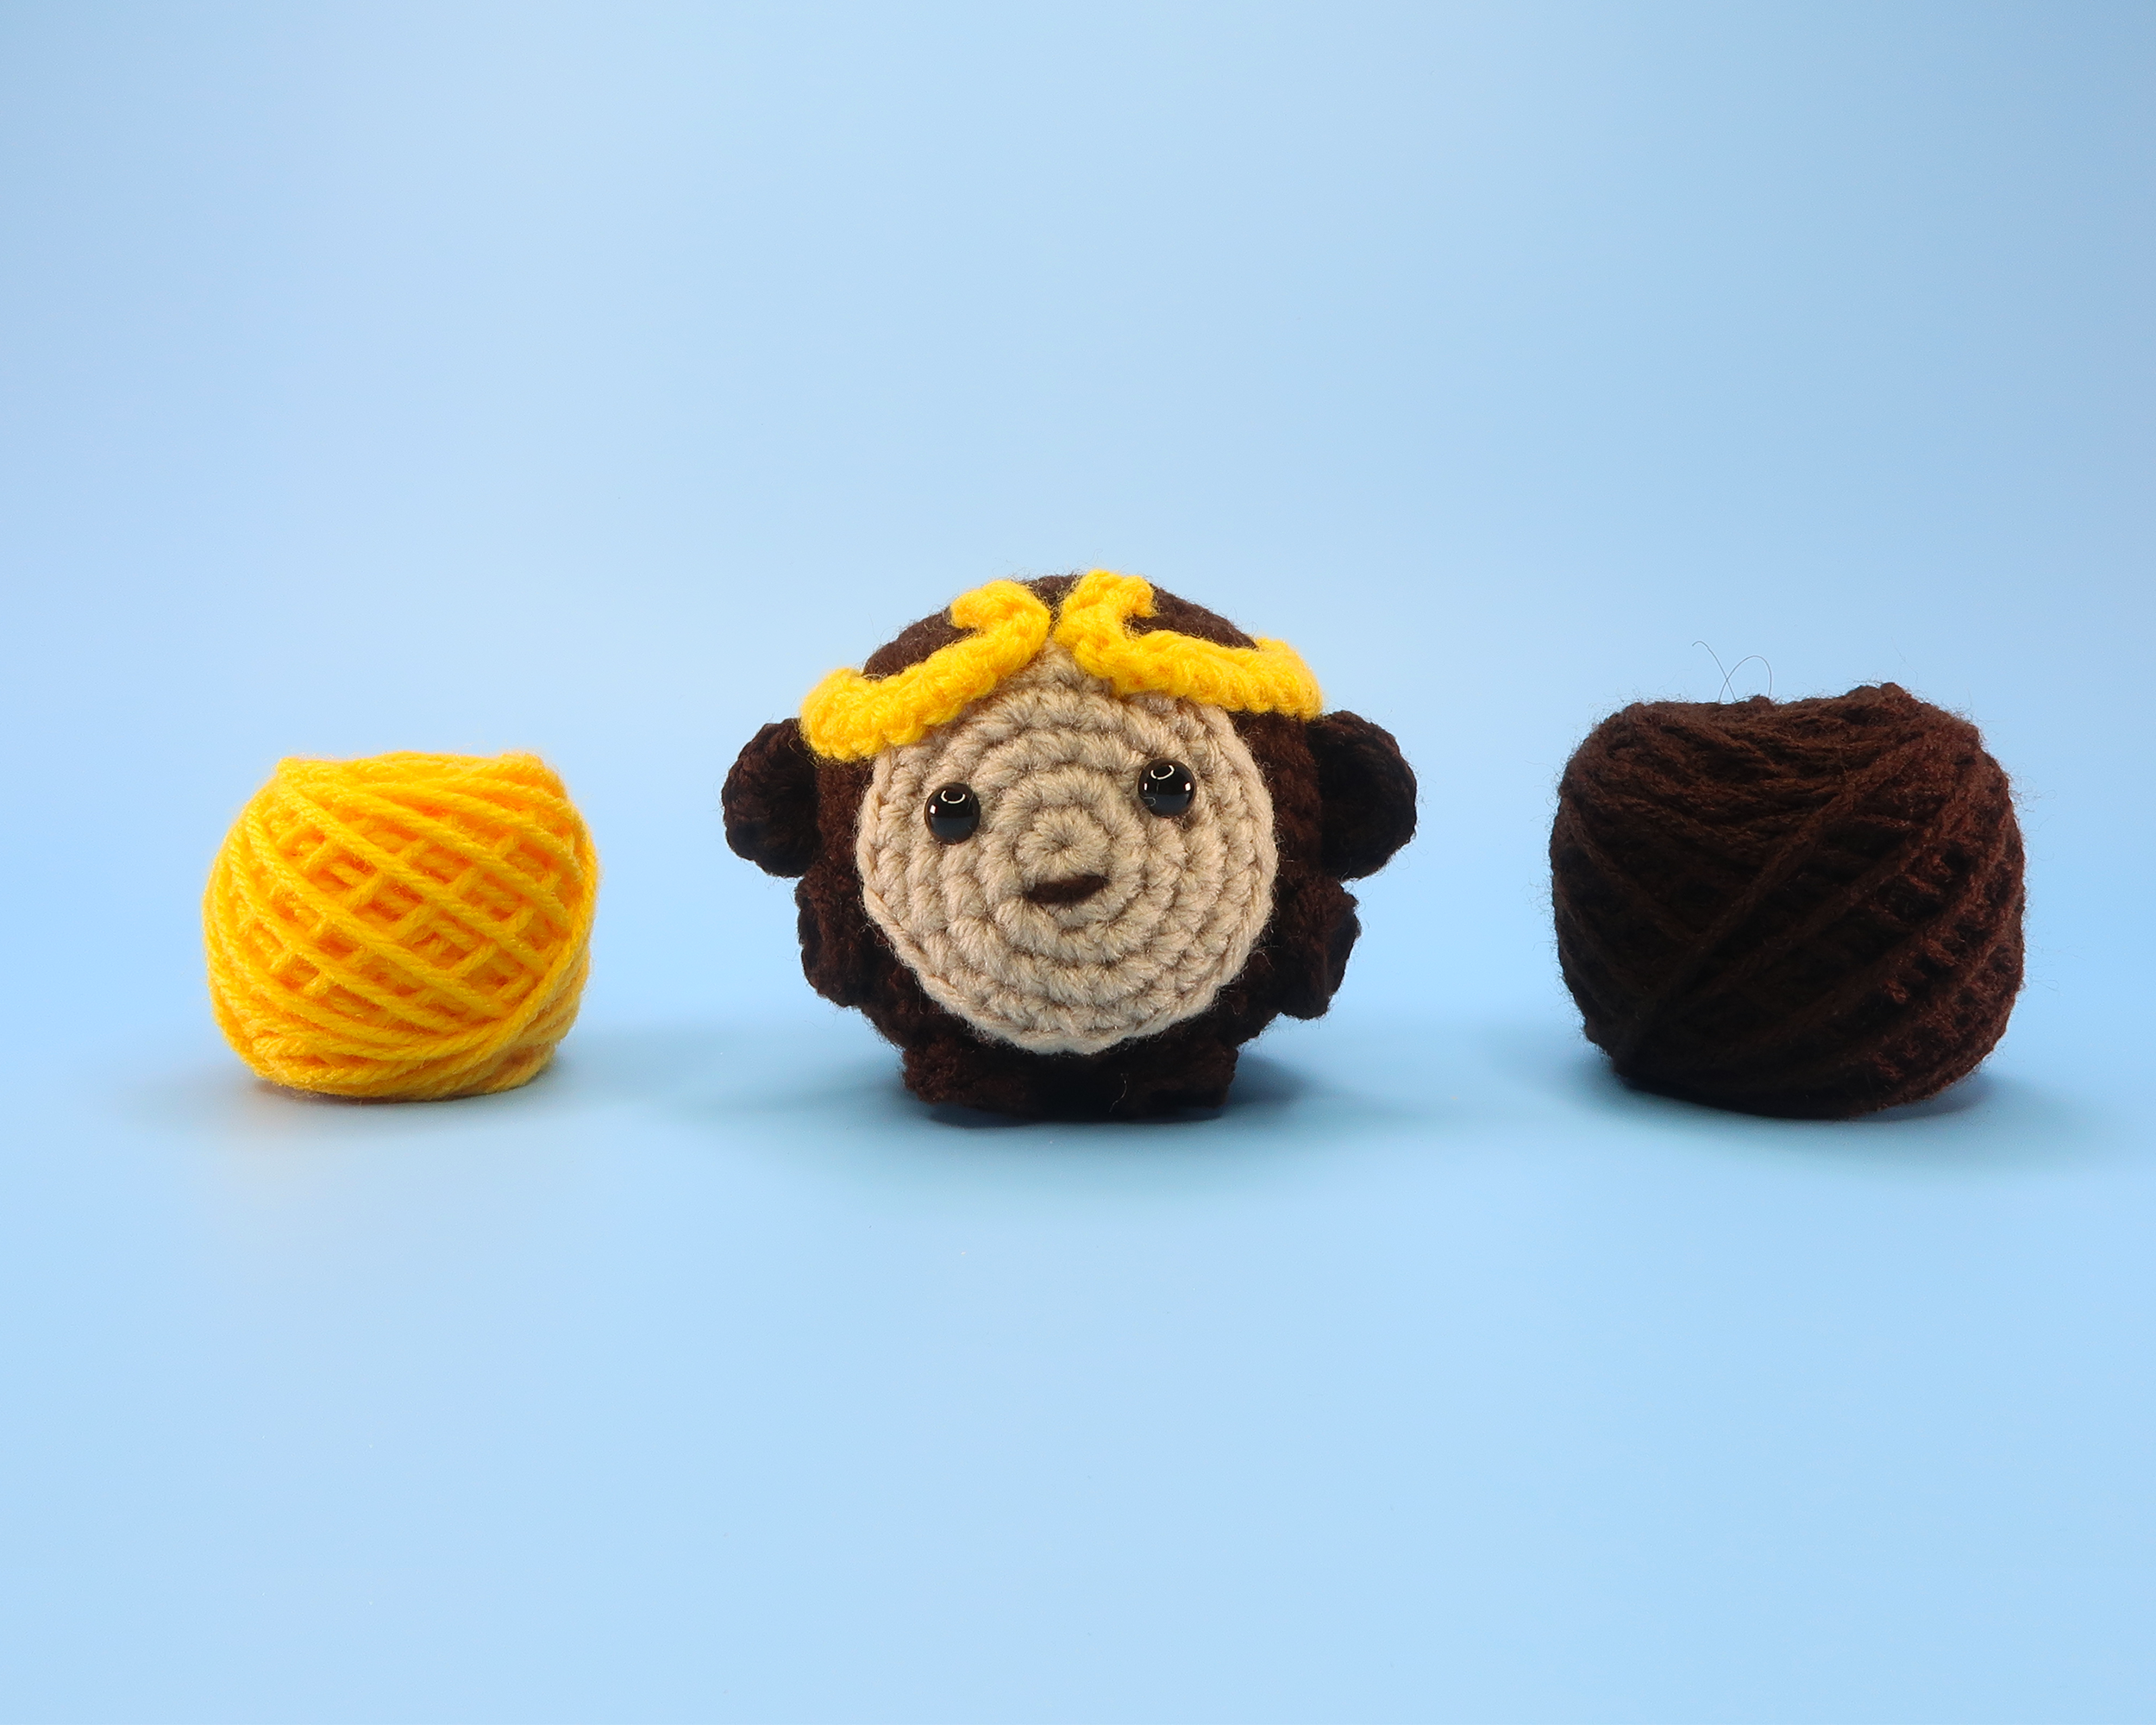 Monkey Crochet Kit for Beginners